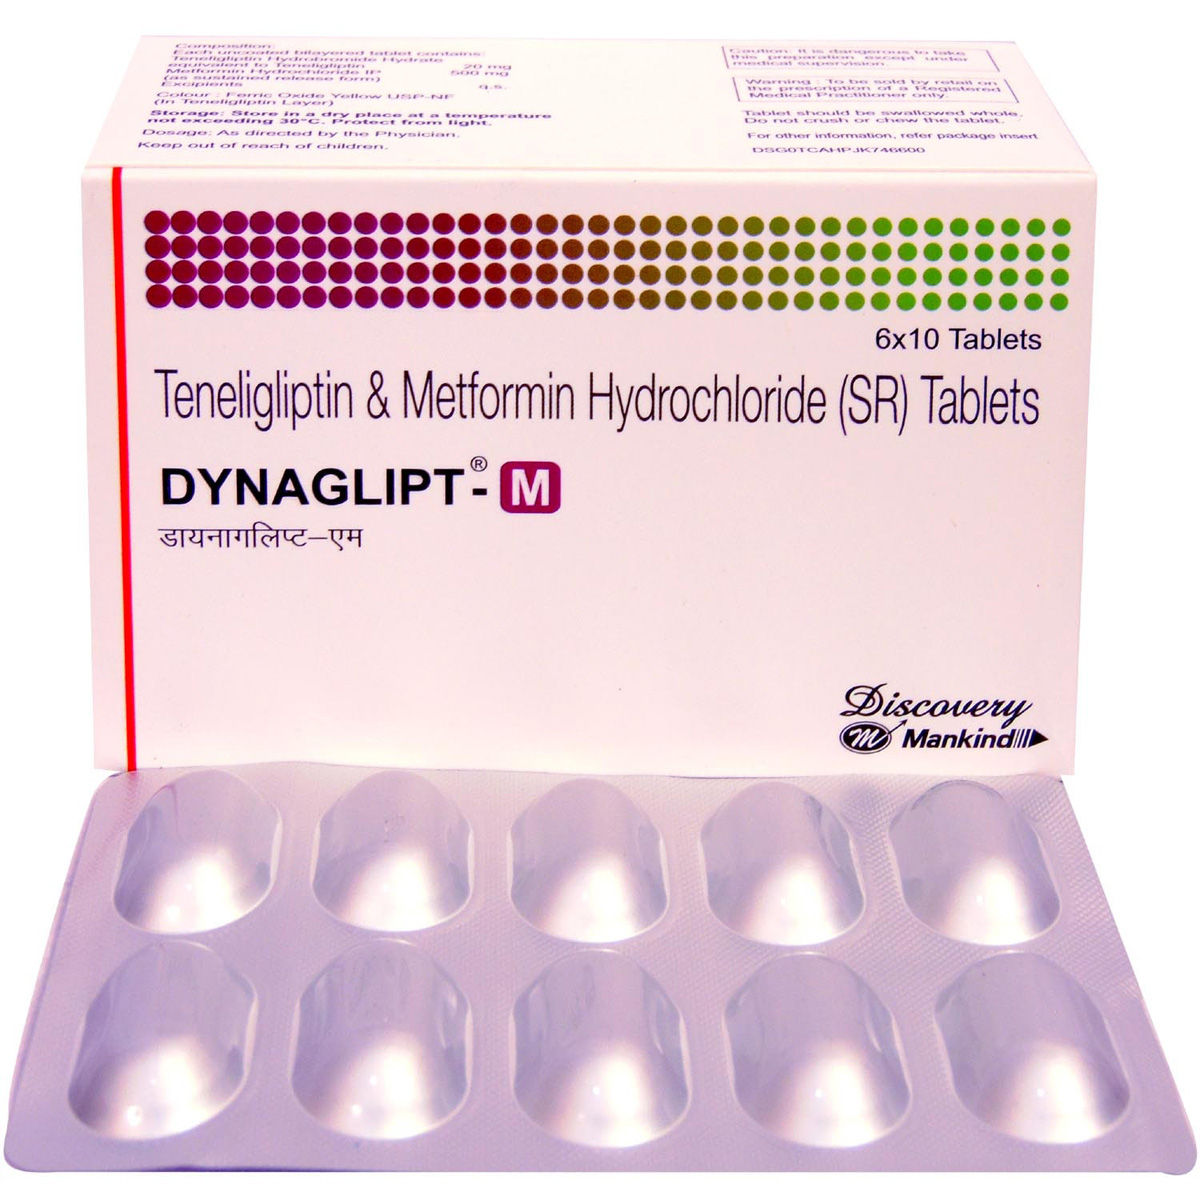 Dynaglipt-M Tablet 10's, Pack of 10 TABLETS